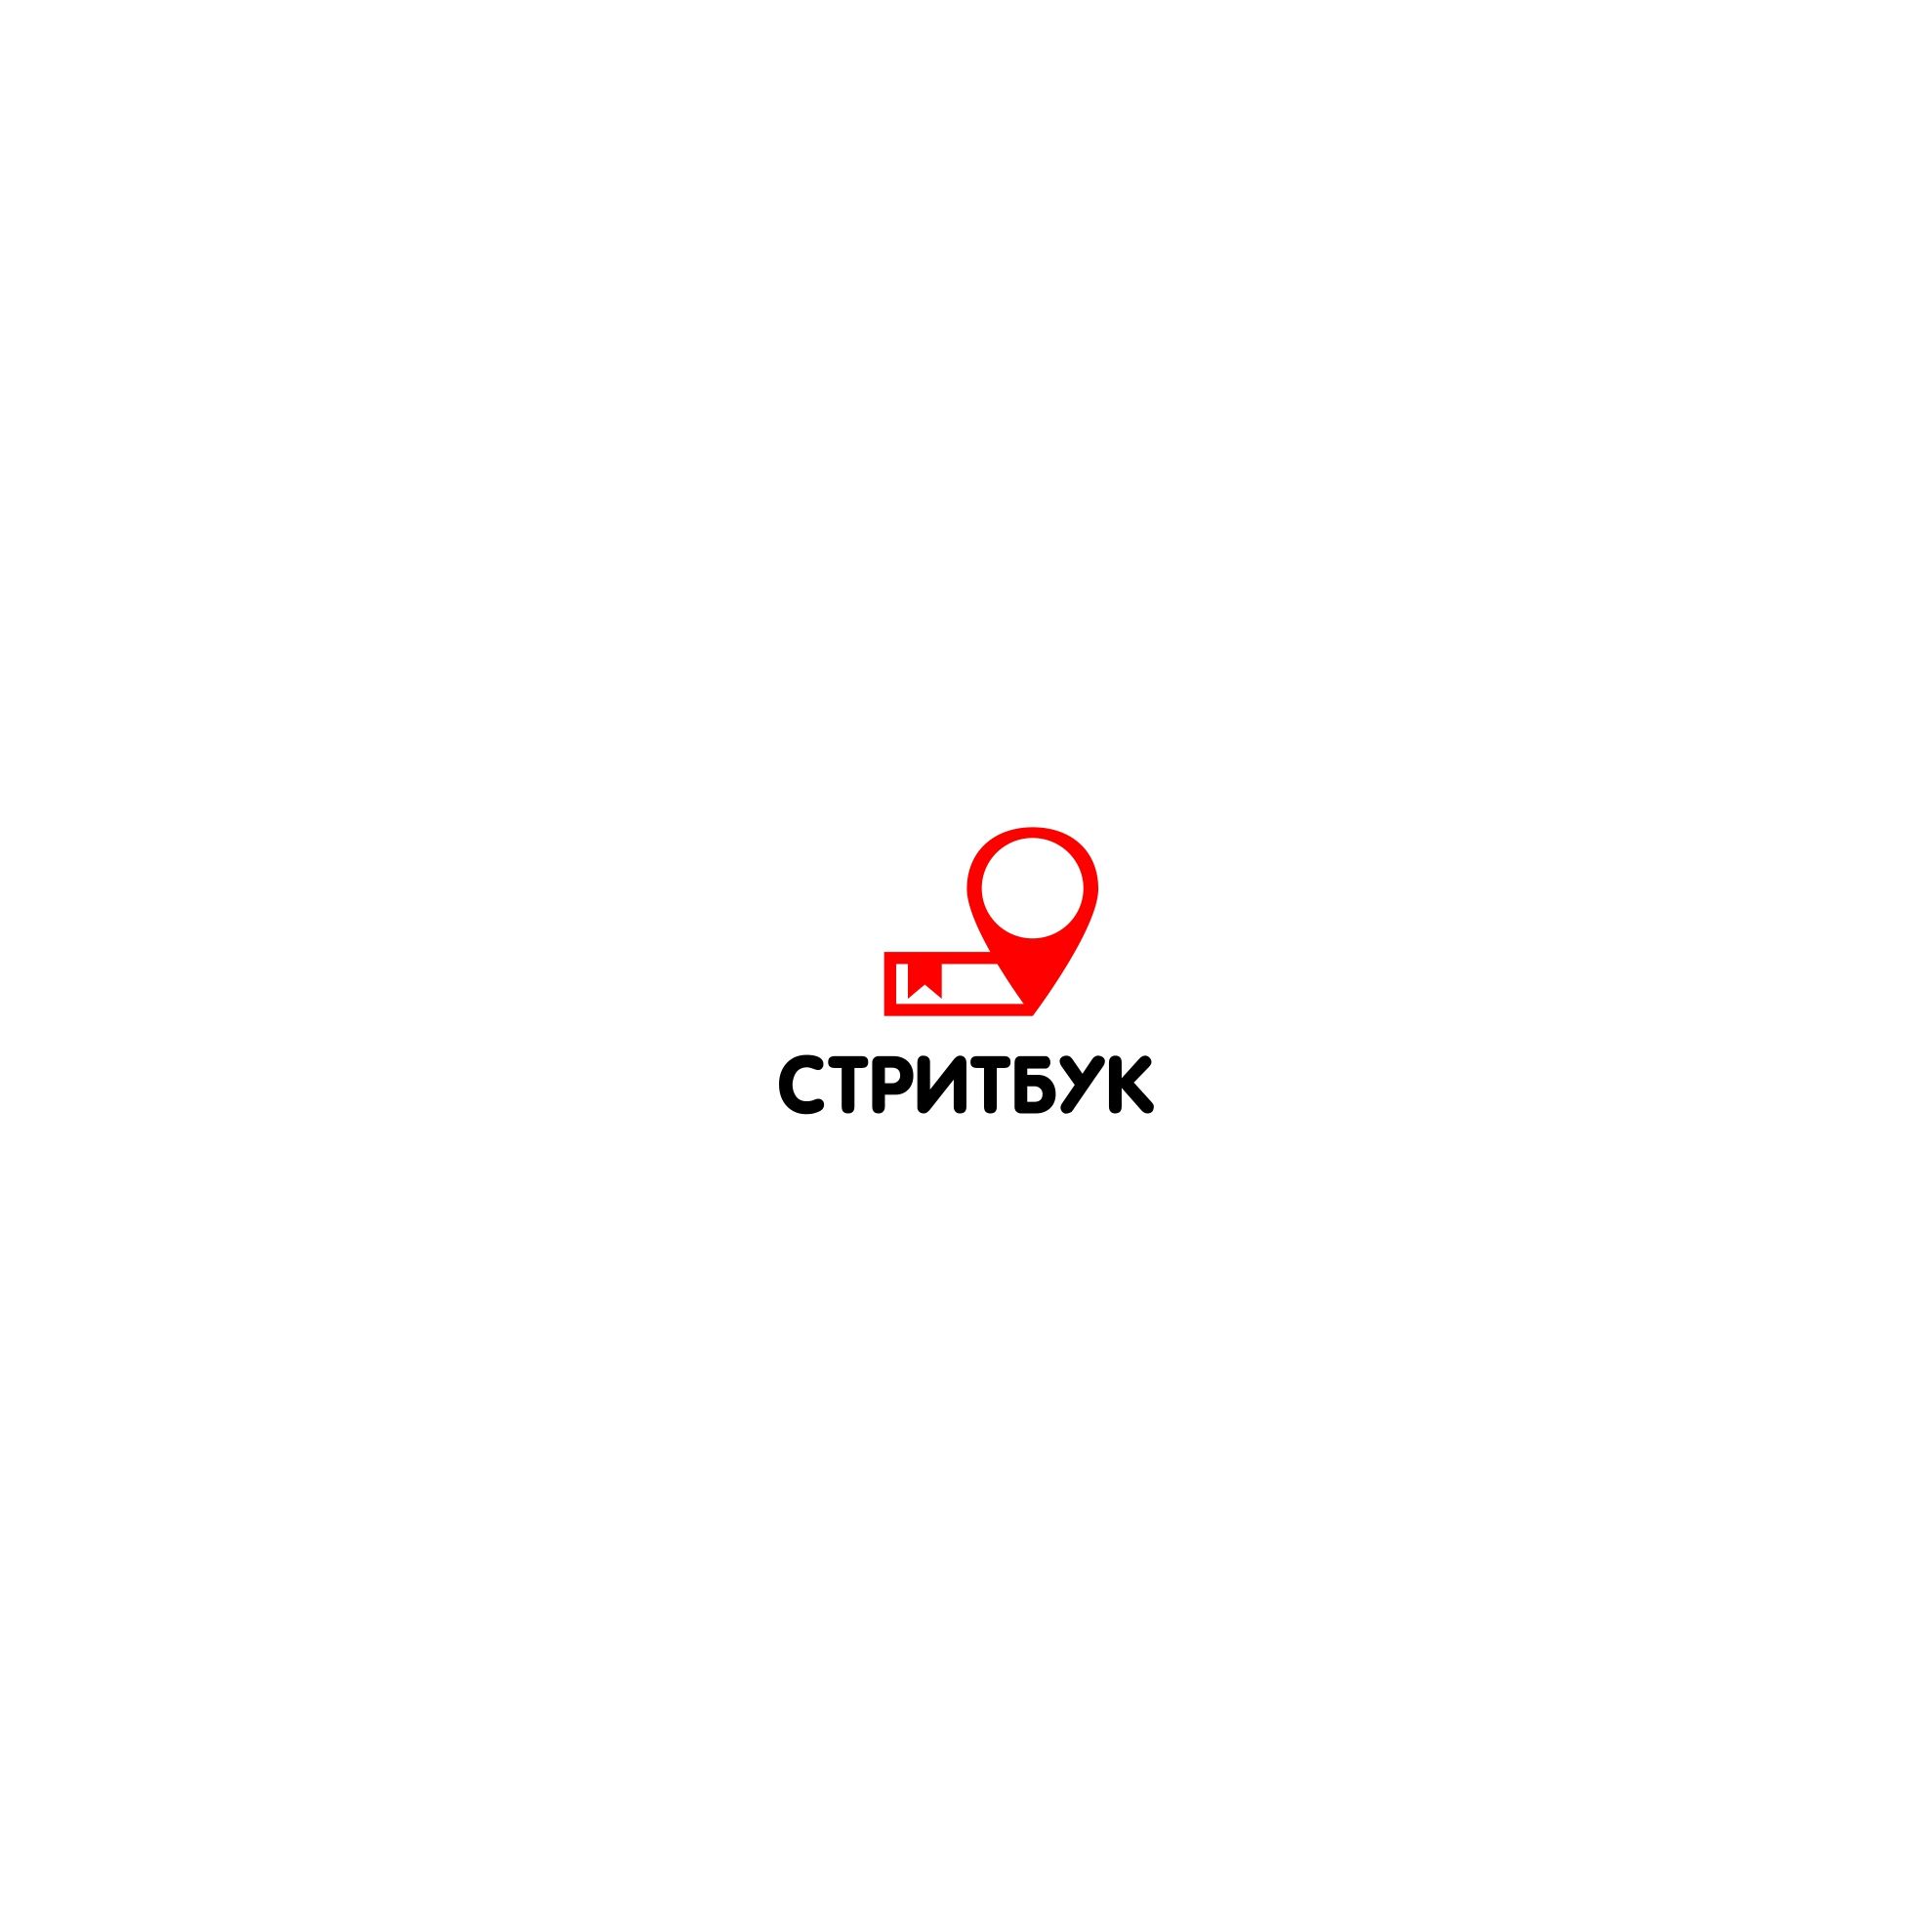 Логотип для StreetBook, СтритБук - дизайнер trojni